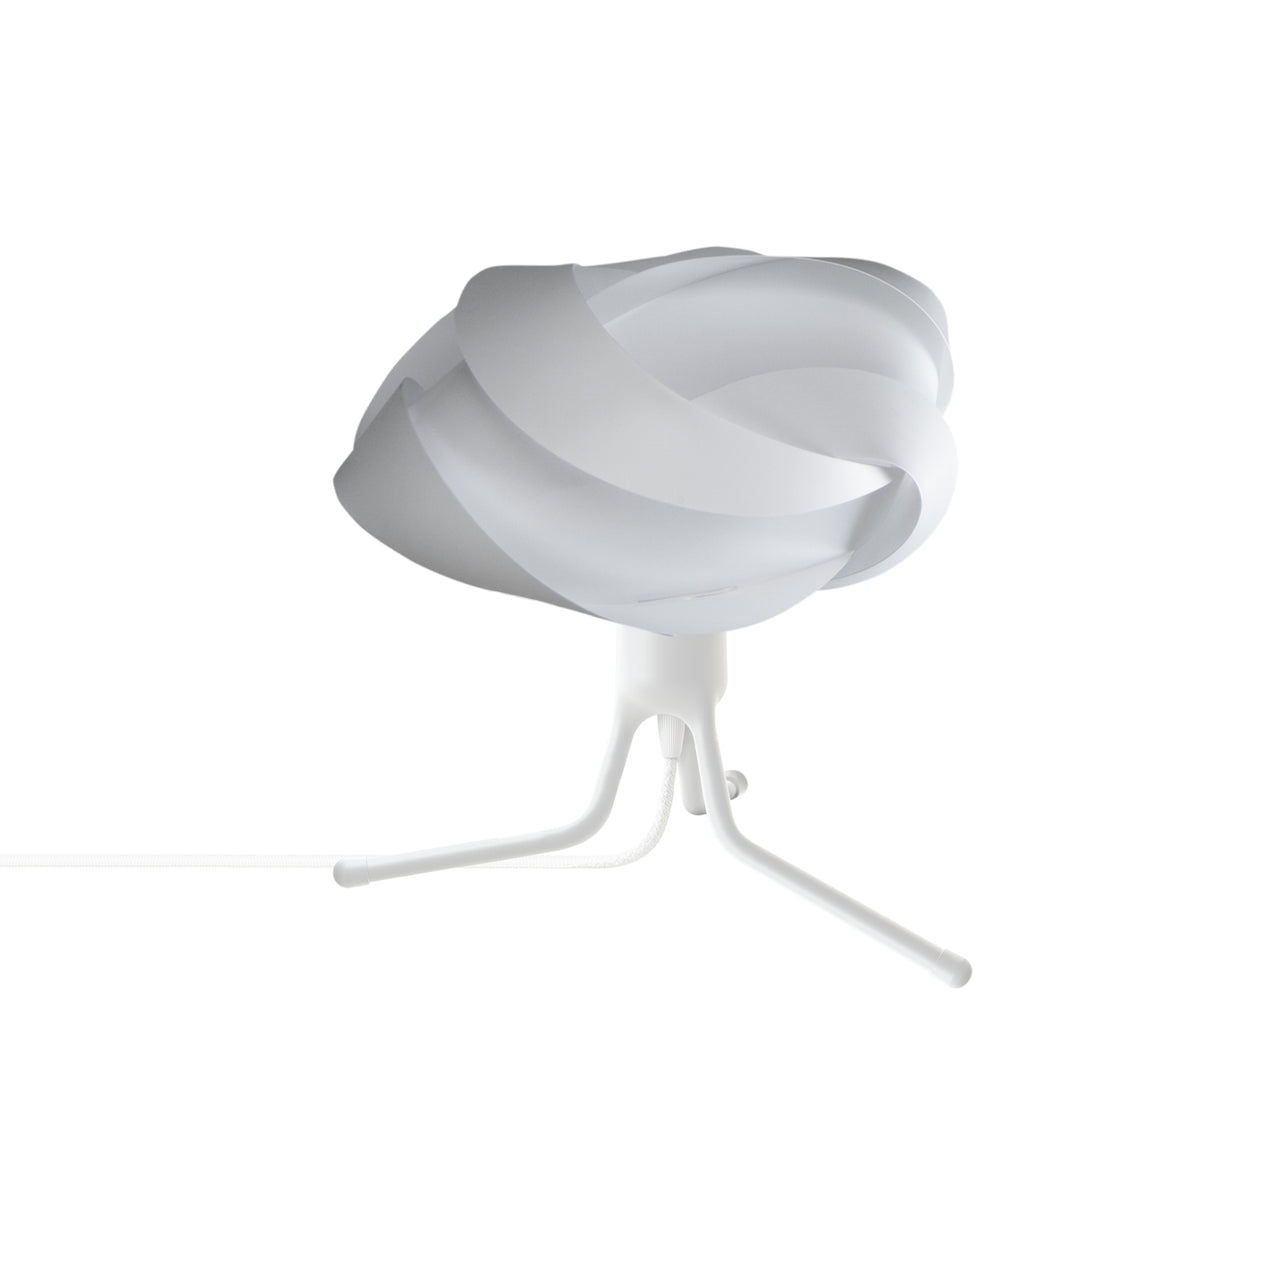 Ribbon Adjustable Tripod Table Lamp: Mini - 13